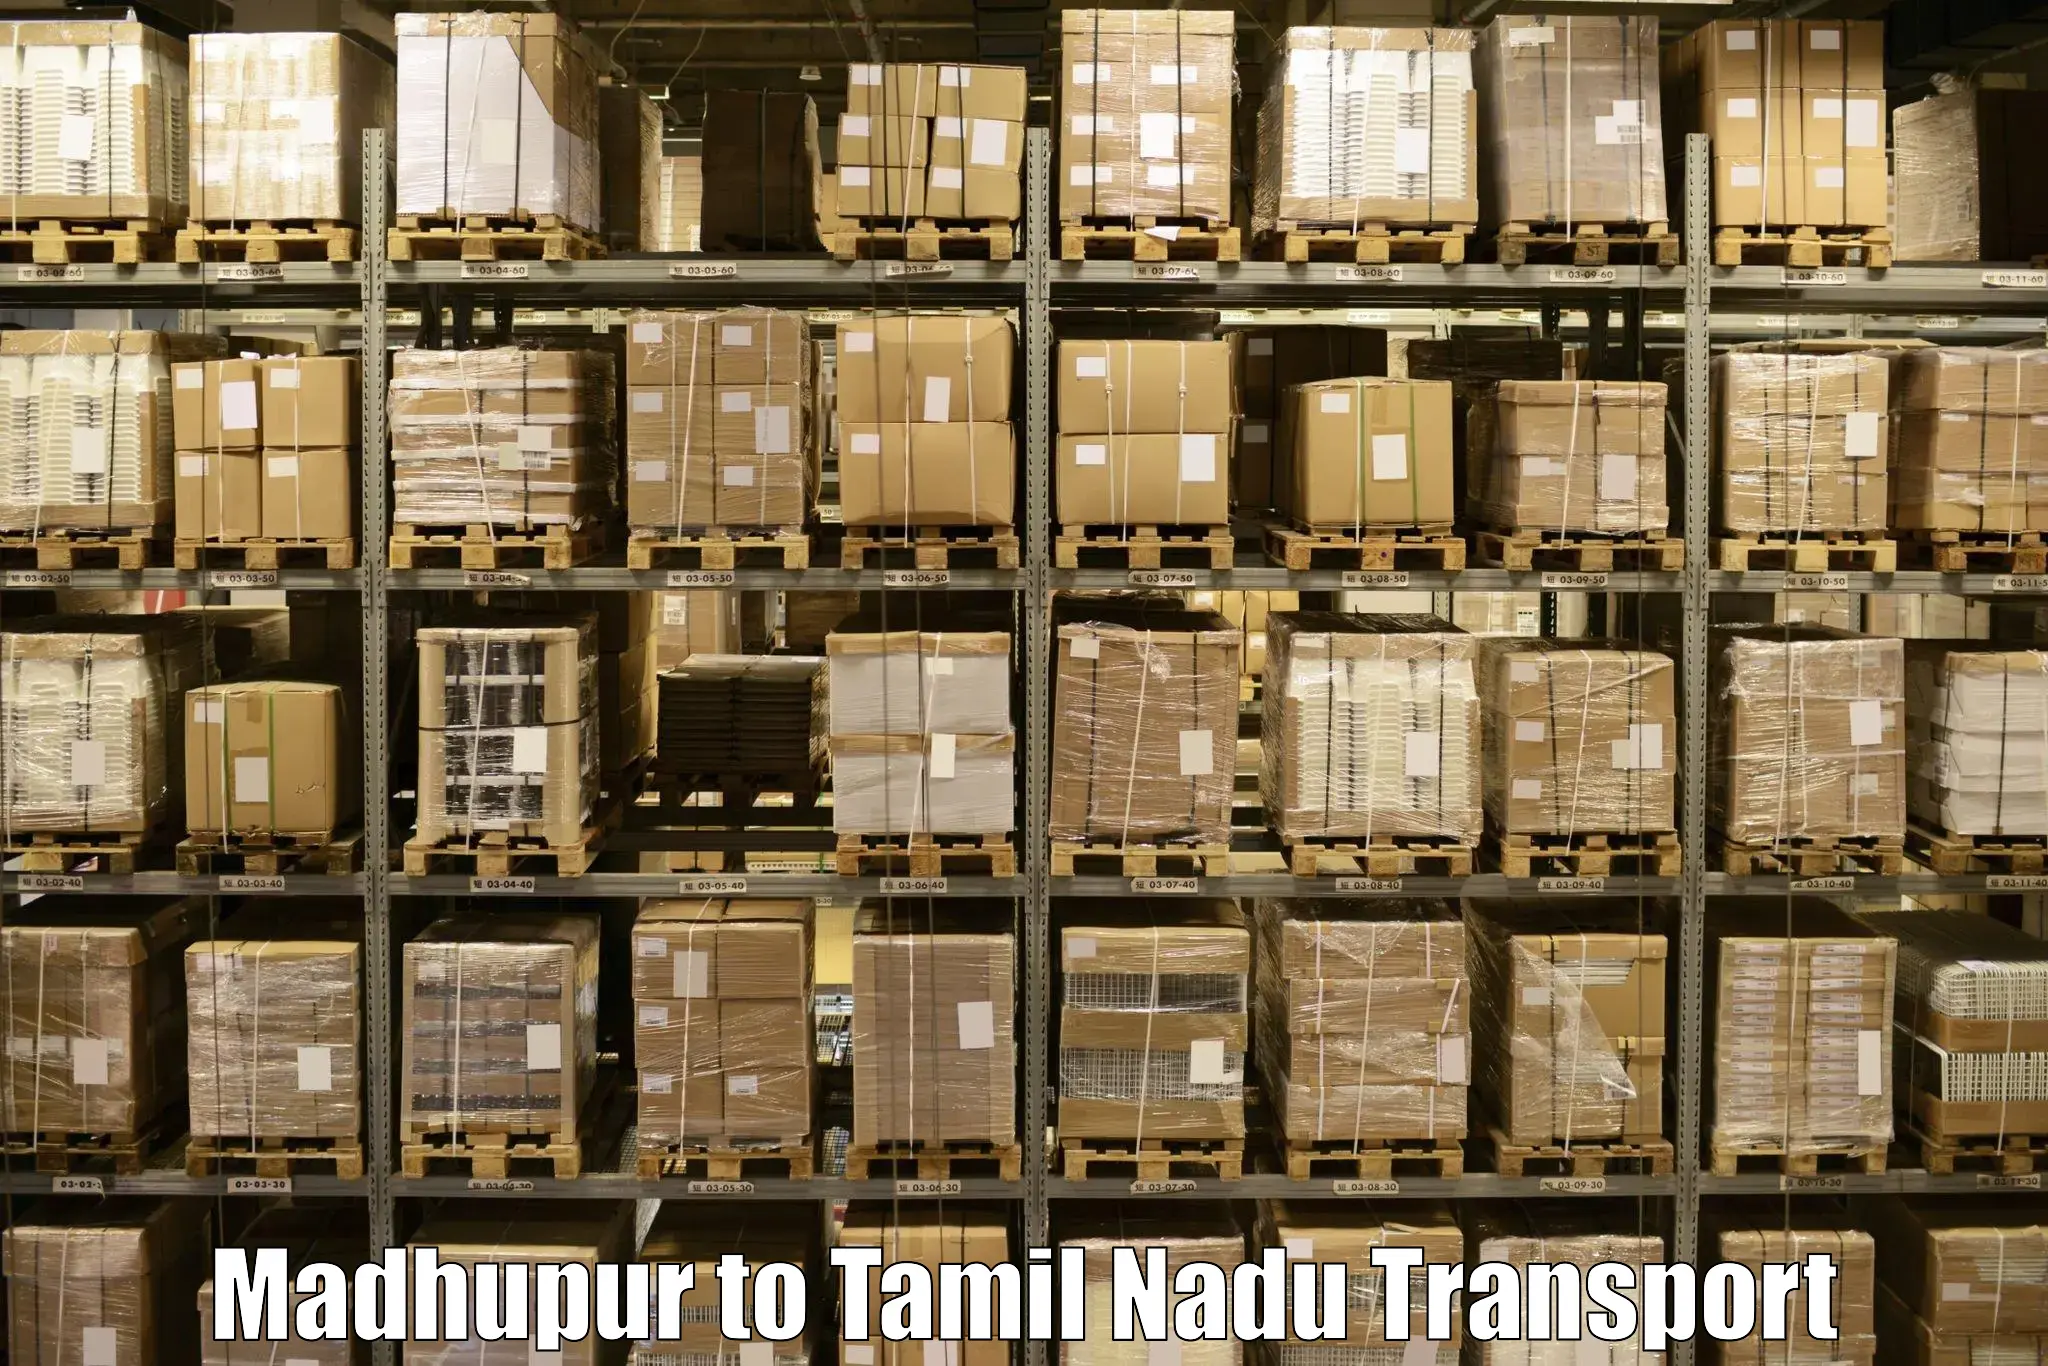 Furniture transport service Madhupur to Perunali